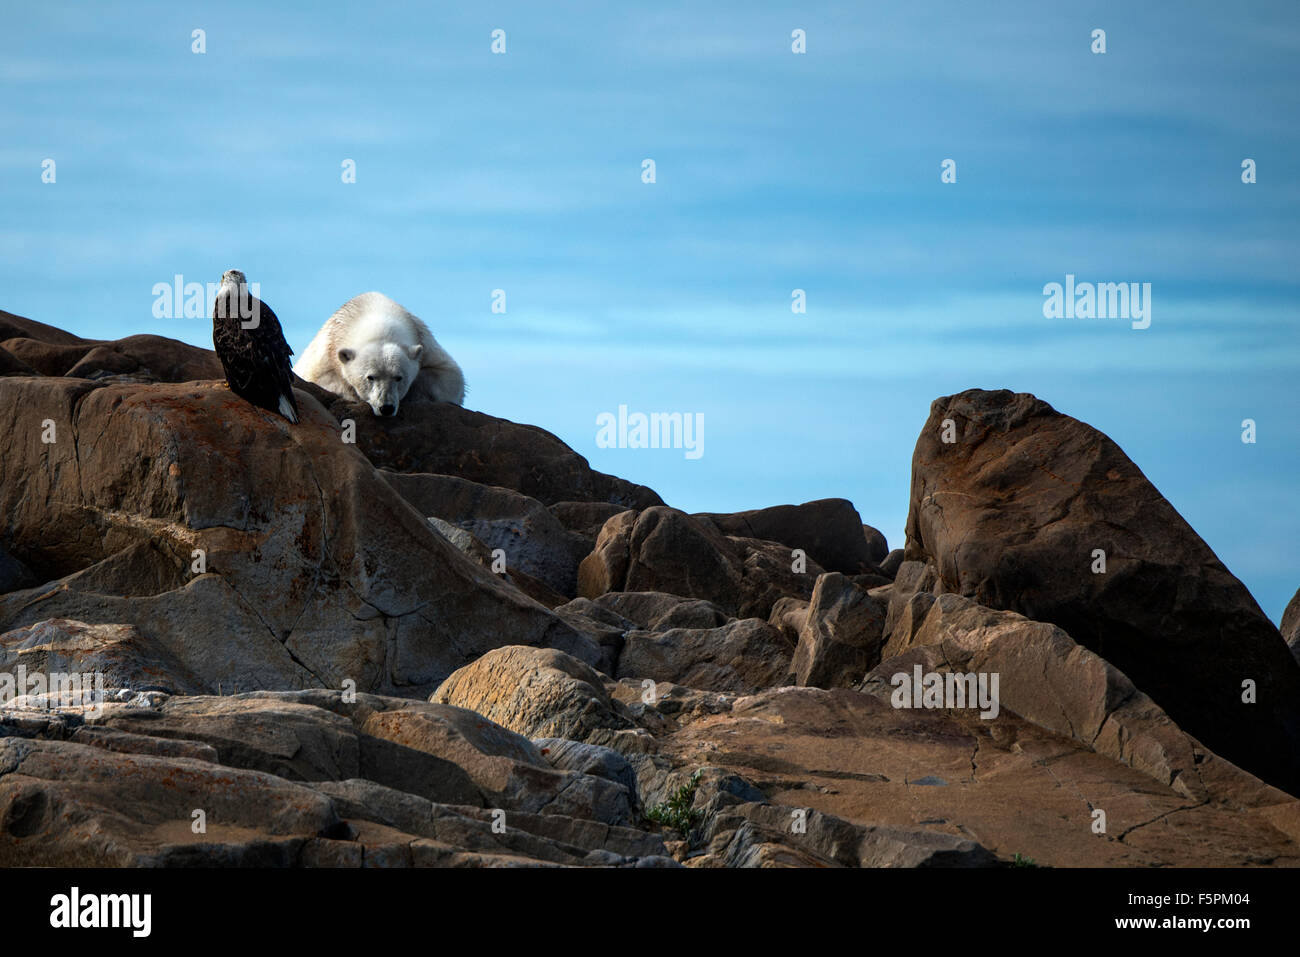 El oso polar (Ursus maritimus) adulto tumbado sobre rocas con el águila calva (Haliaeetus leucocephalus) Churchill, Manitoba, Canadá Foto de stock